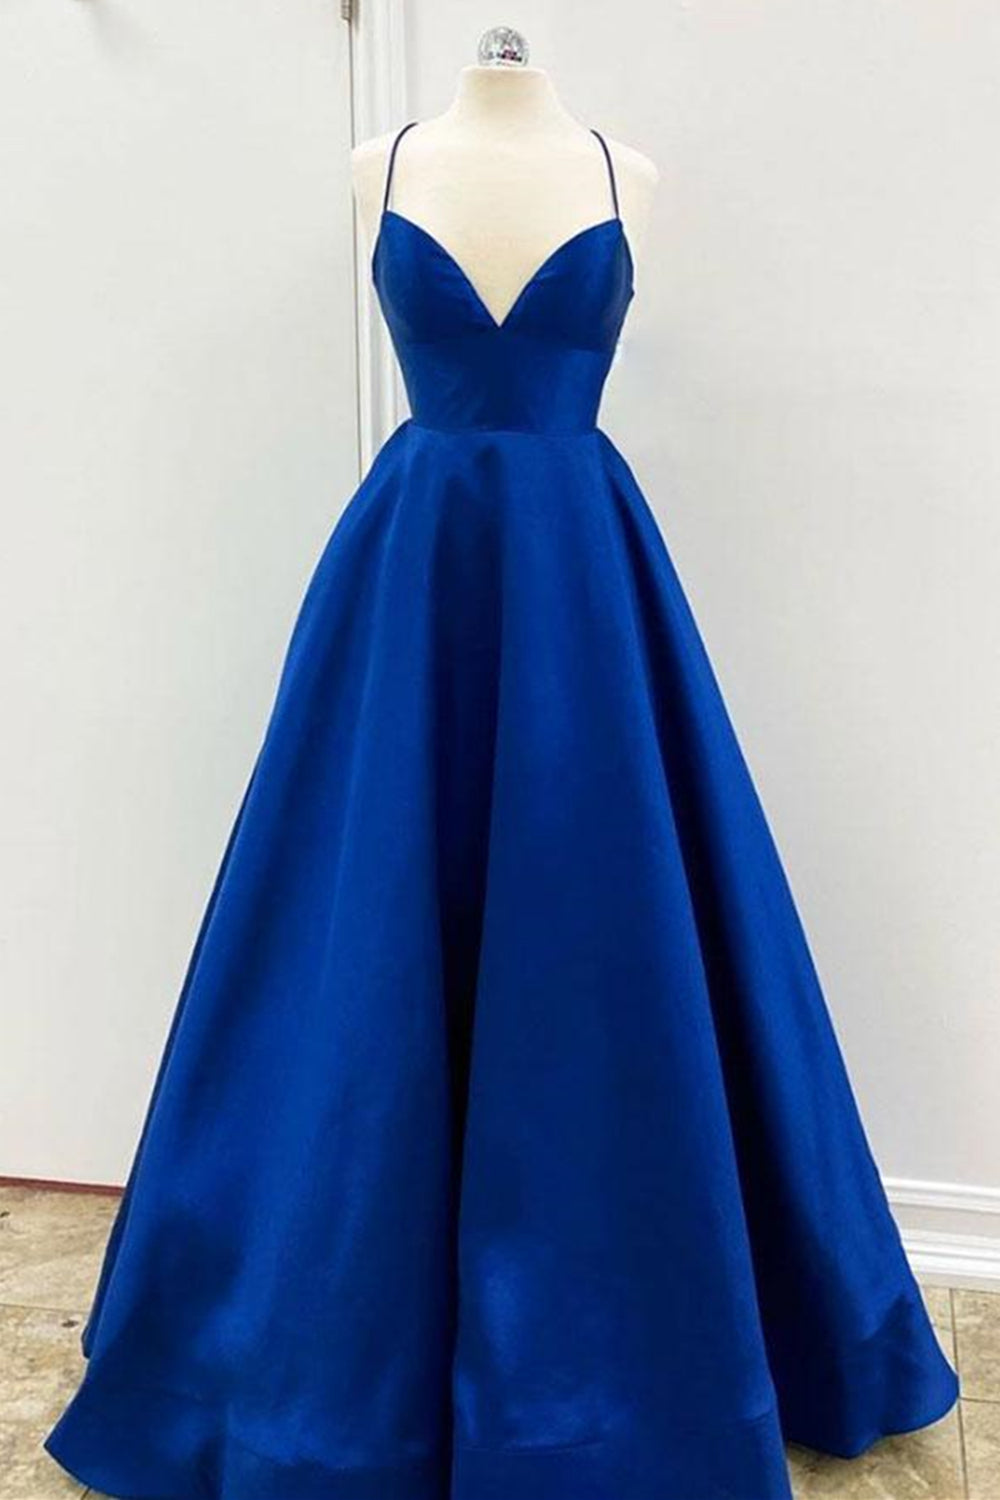 Simple V Neck Backless Royal Blue Satin Long Prom Dresses, V Neck Royal Blue Formal Graduation Evening Dresses